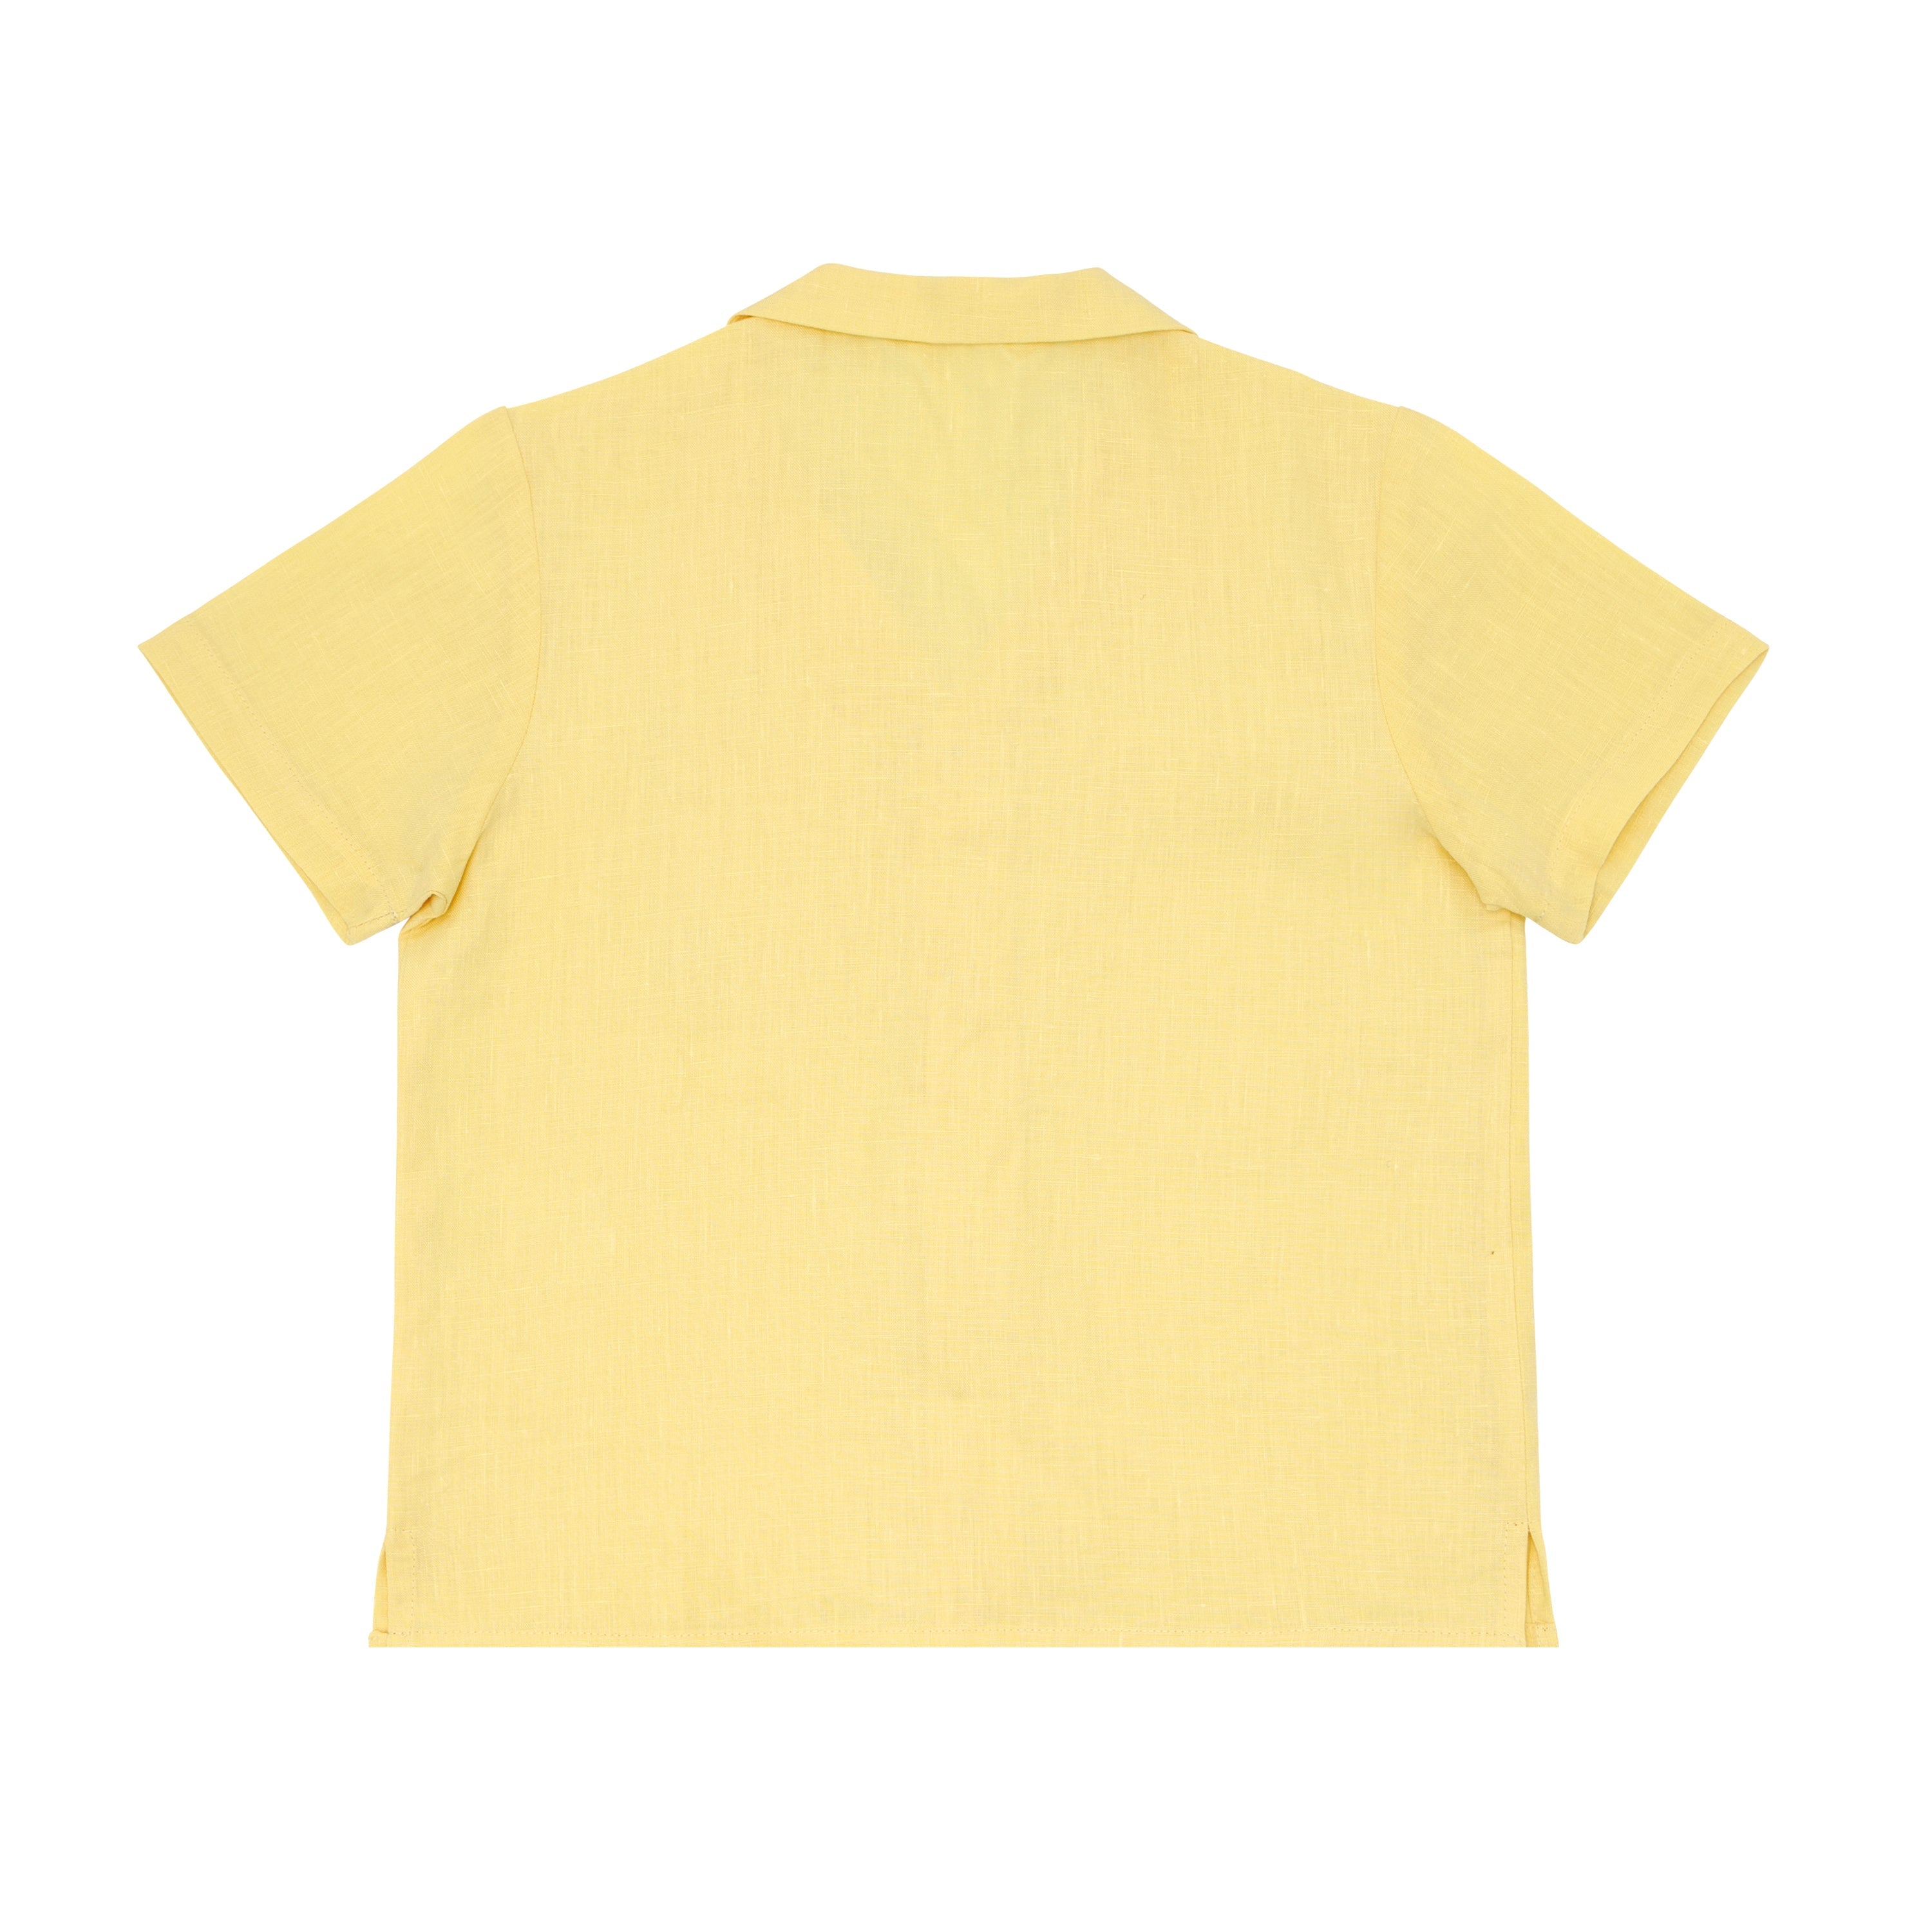 Fanm Mon x Minnow Boy's Linen Shirt by Fanm Mon